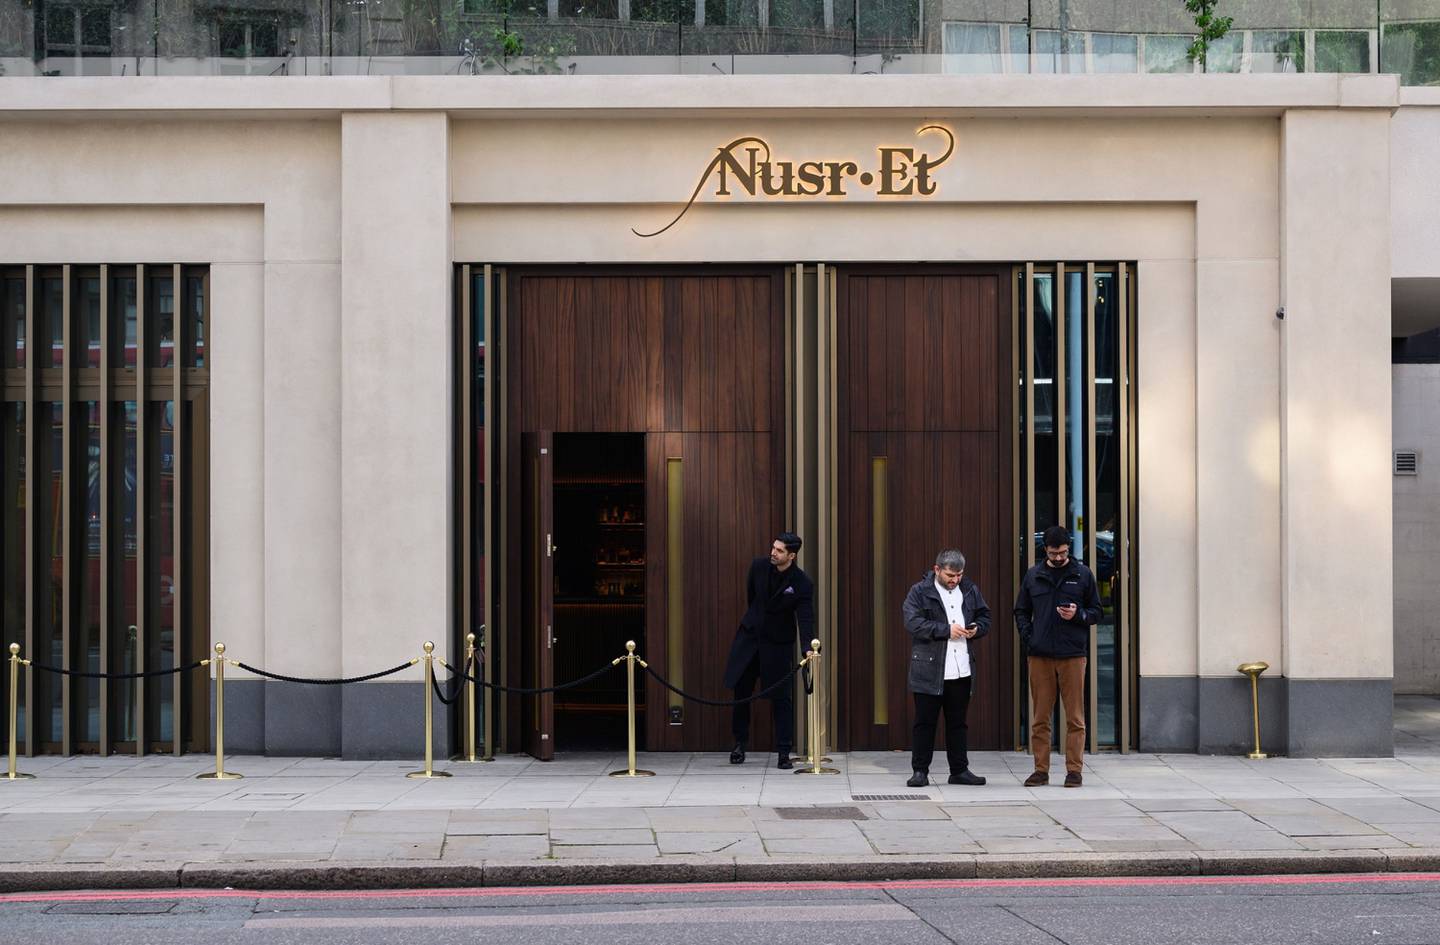 El restaurante de carnes Nusr-Et en el barrio londinense de Knightsbridge. Fotógrafo: Leon Neal/Getty Images Europedfd